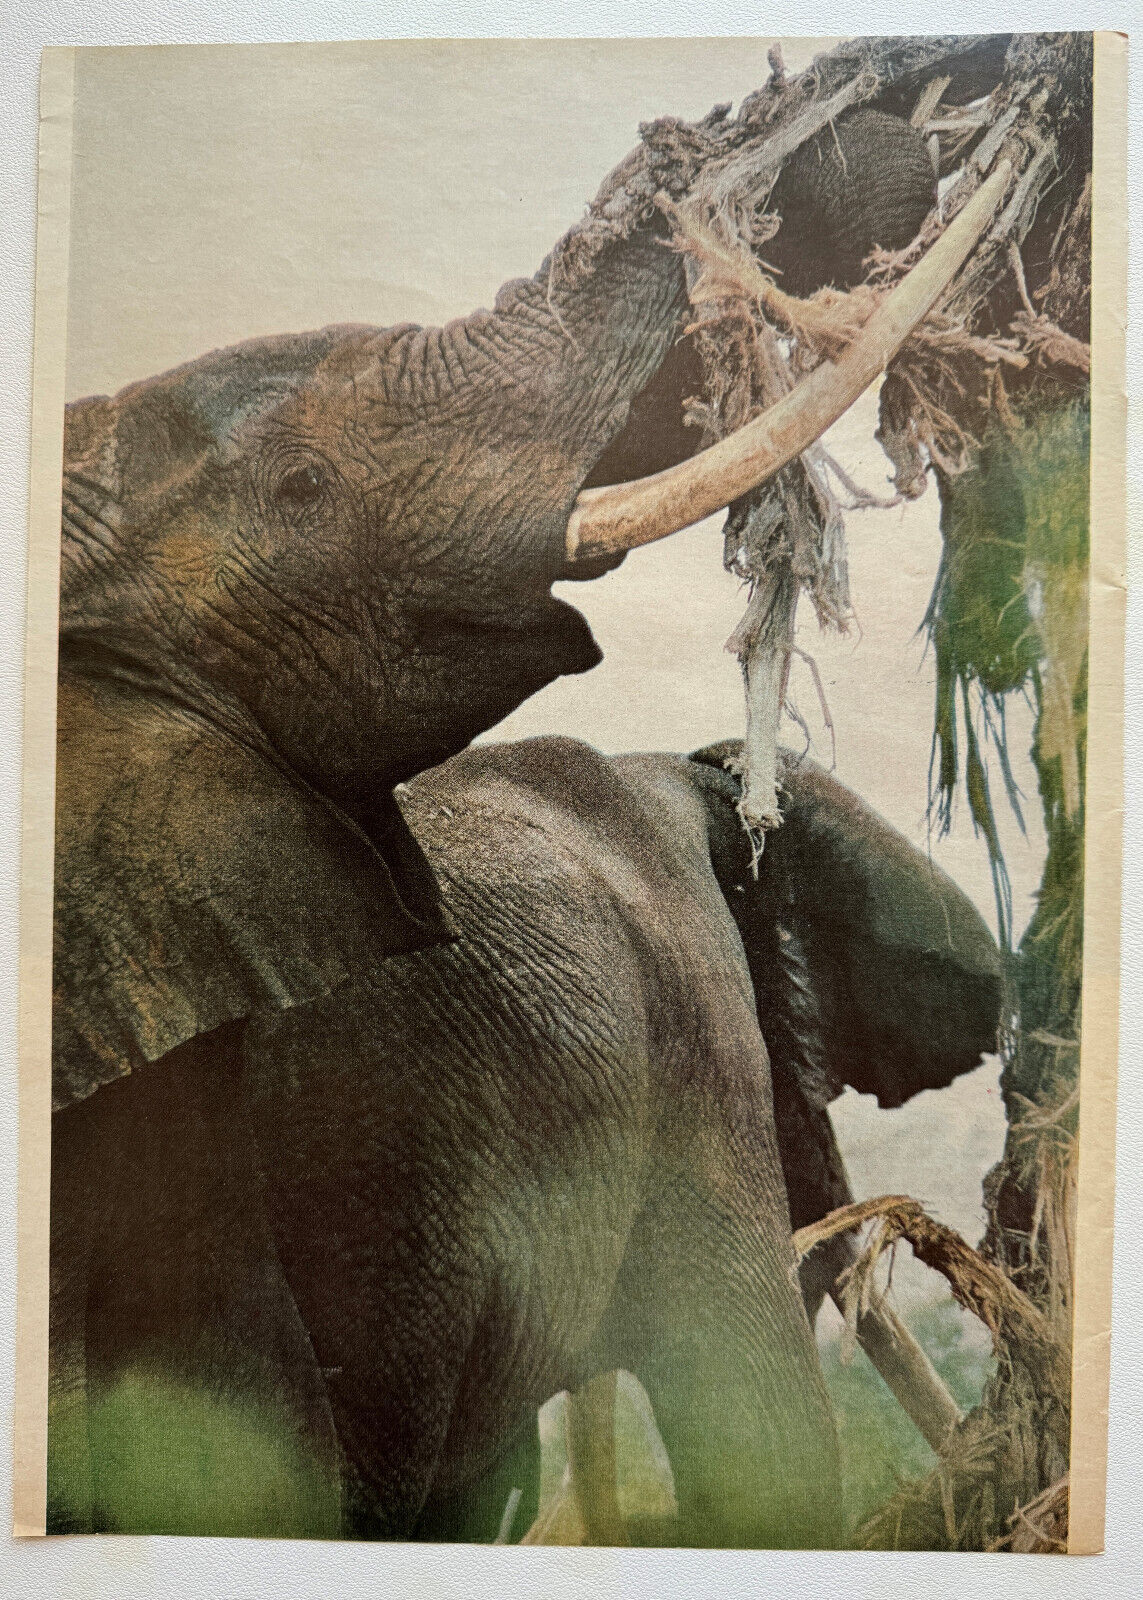 Image Photo Of Elephants Vintage Image 1967 Life Magazine Animals